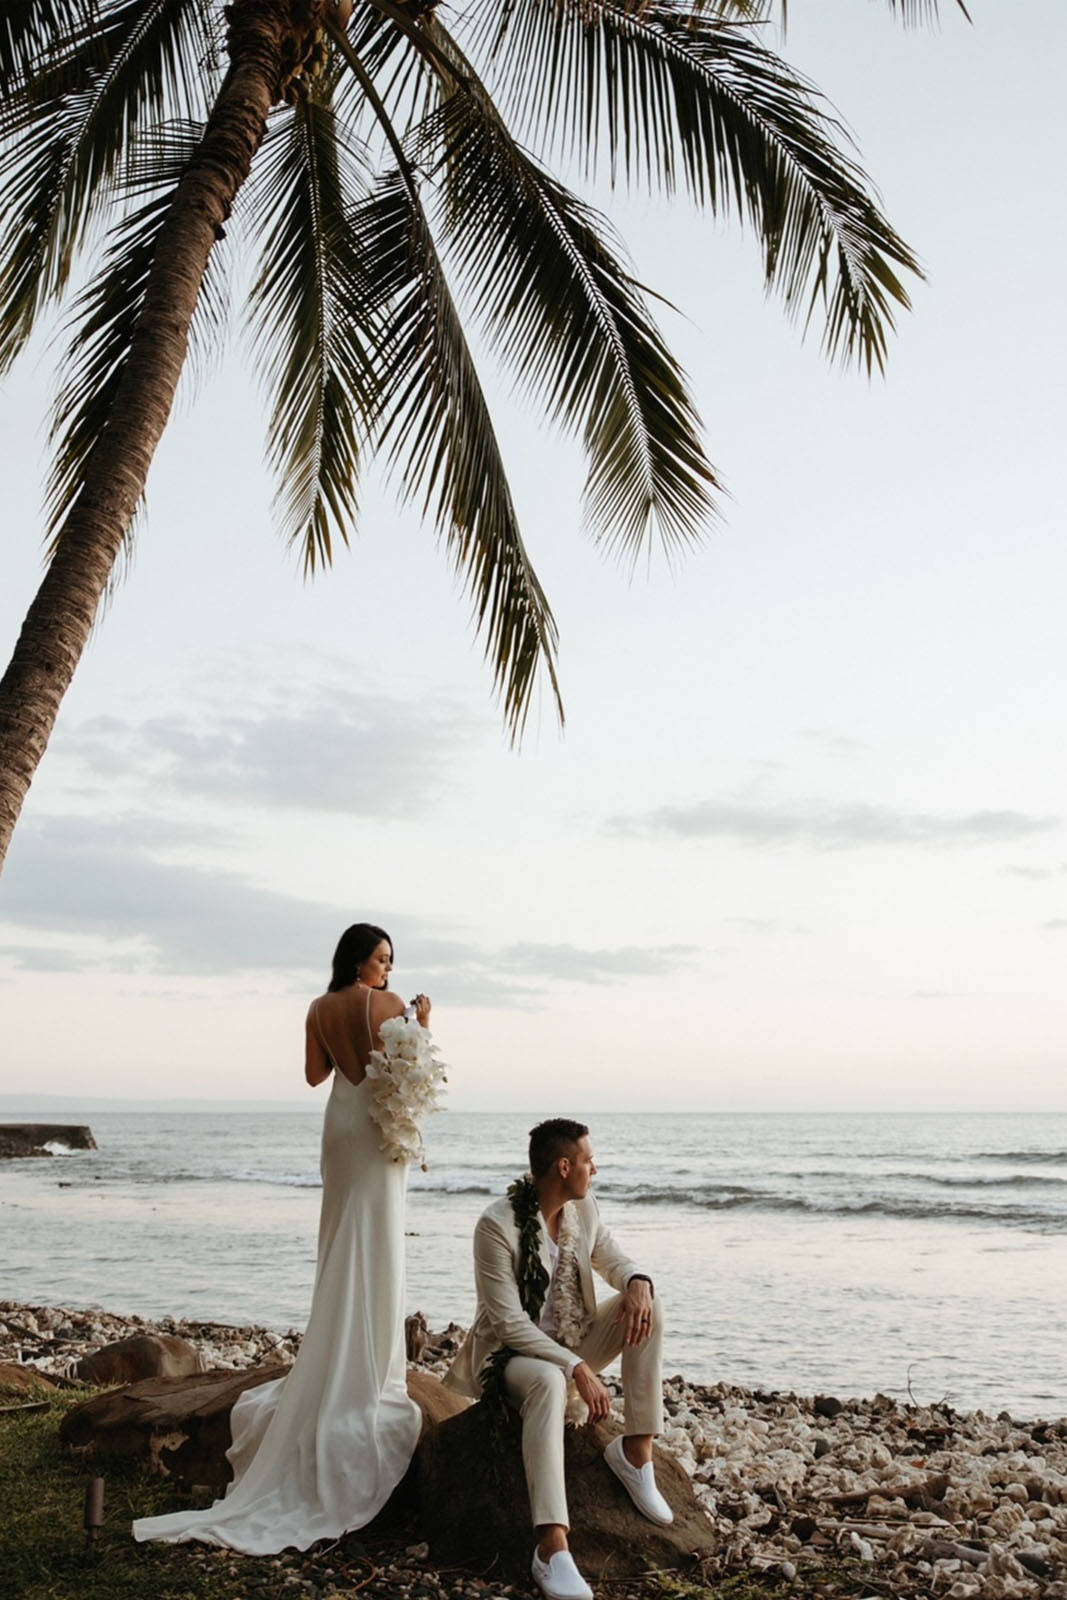 Bride and groom overlooking the ocean from shoreline